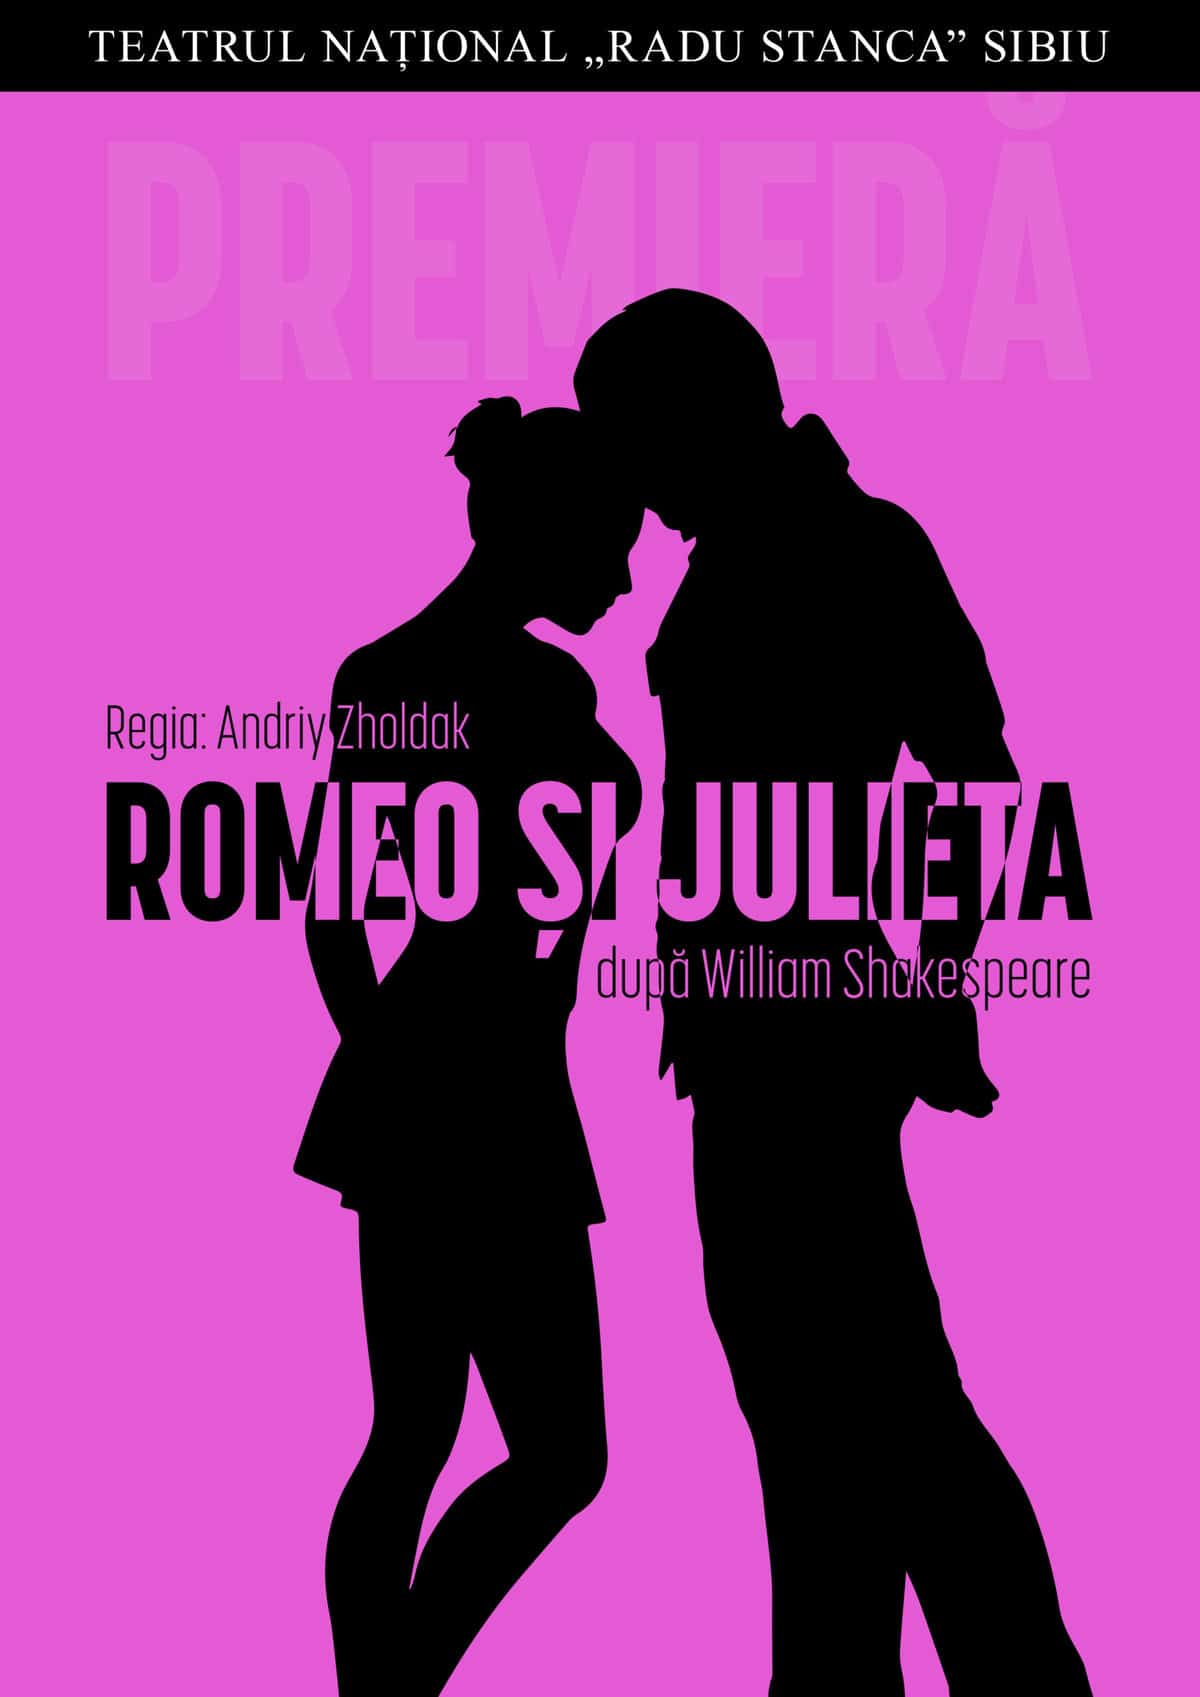 premieră la teatrul "radu stanca" – romeo și julieta, în regia lui andriy zholdak